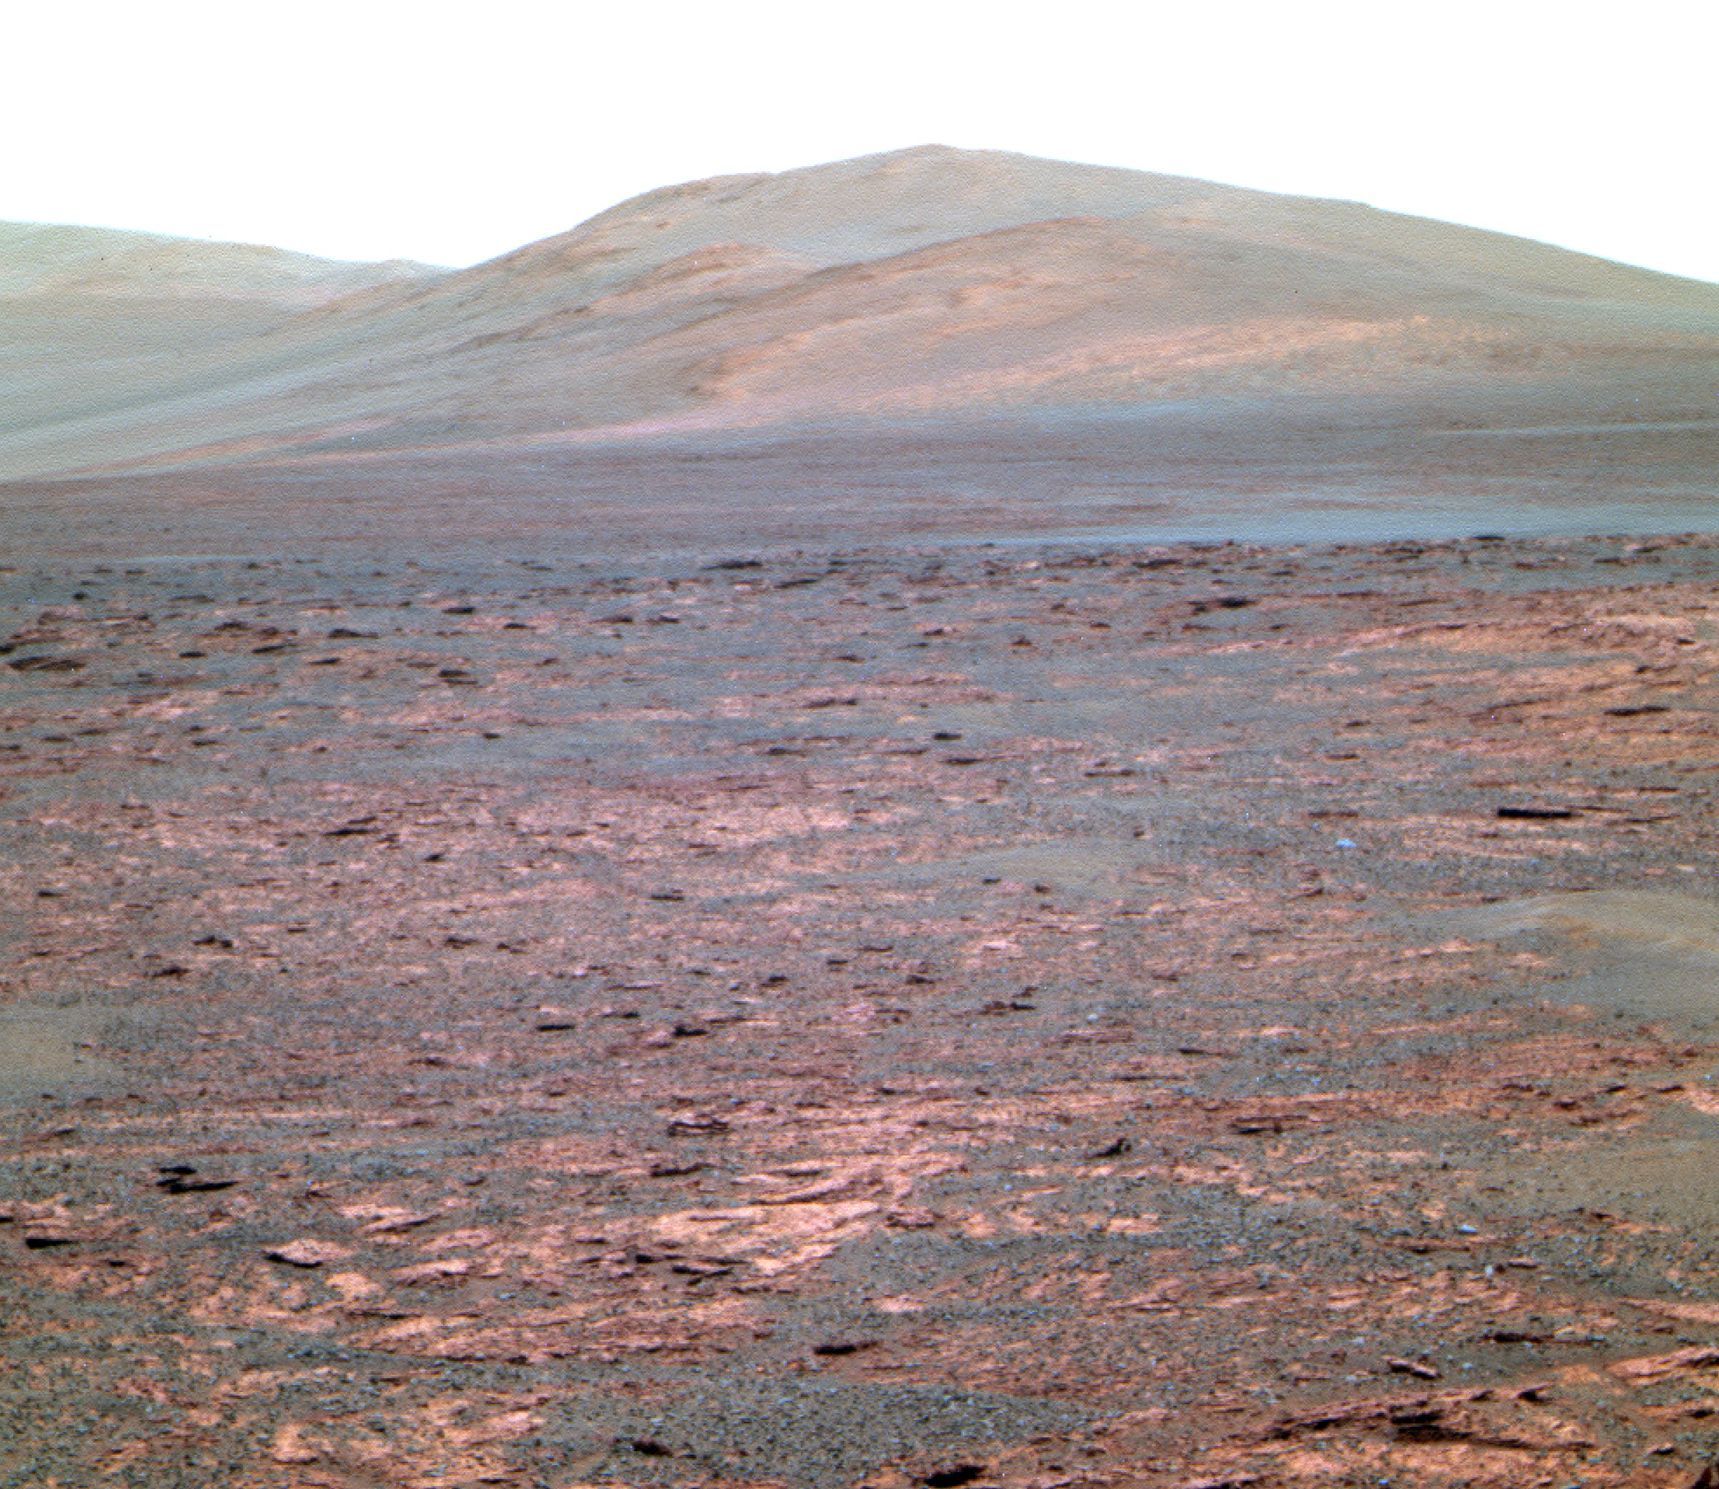 Mars - Solander Point 2